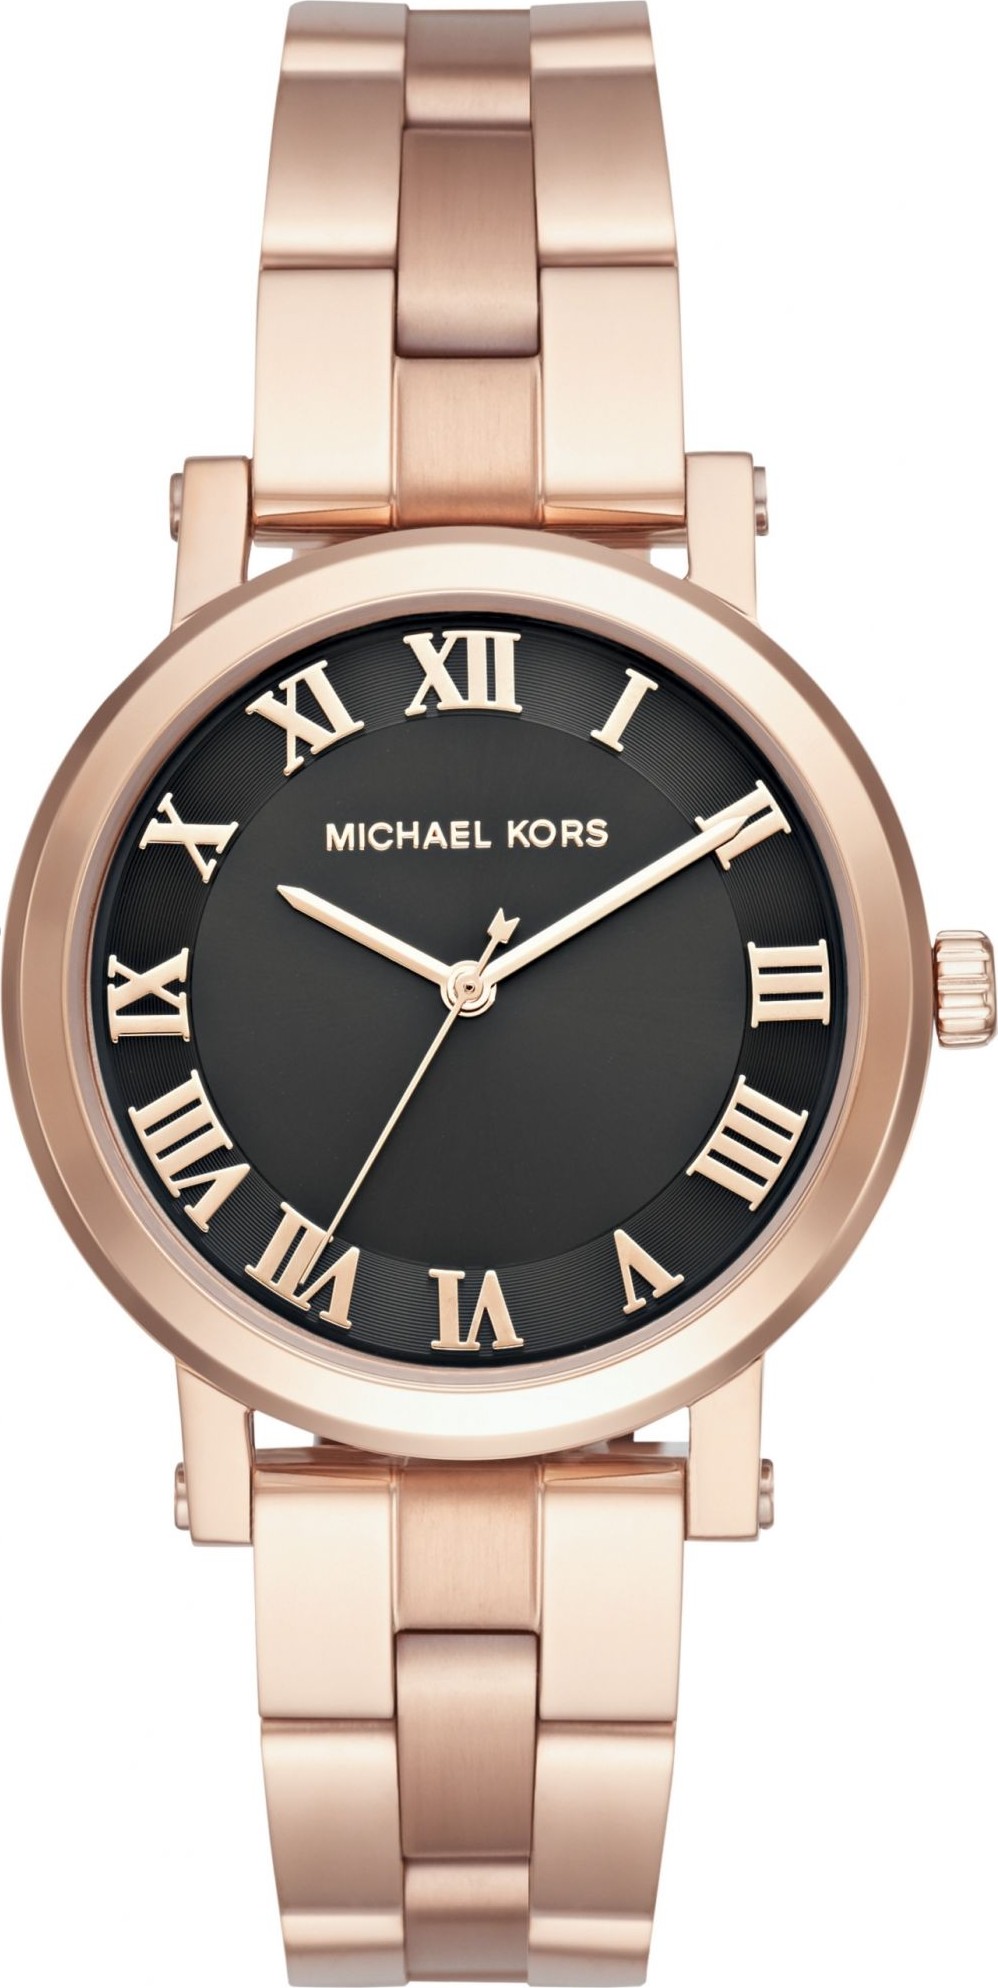 Michael Kors MK3585 Norie Rose Gold Watch 38mm